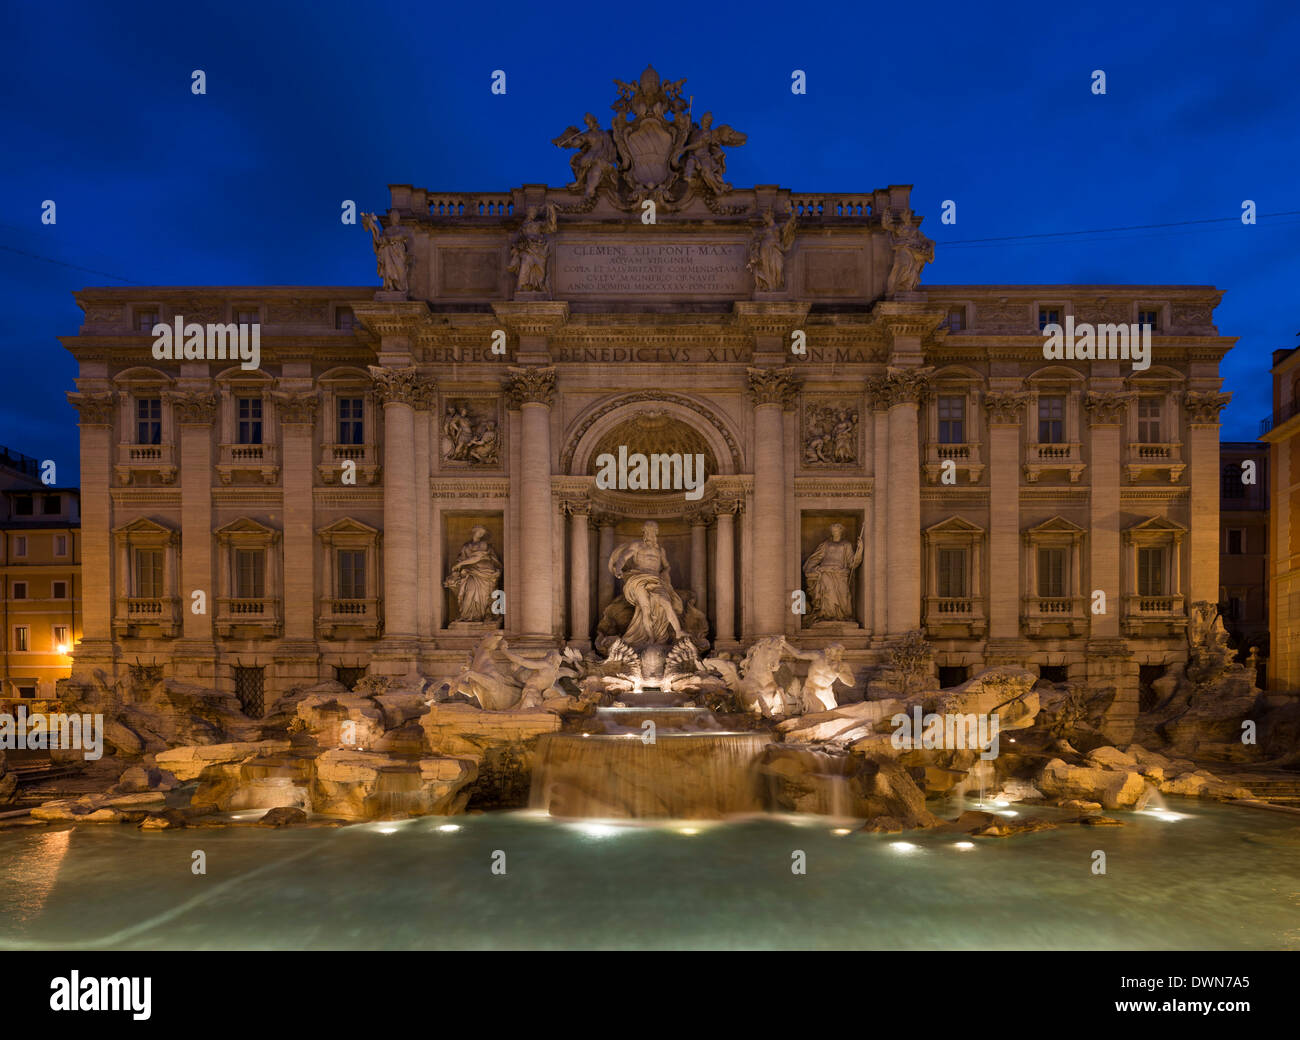 La fontana de Trevi, Roma, Lazio, Italia, Europa Foto de stock